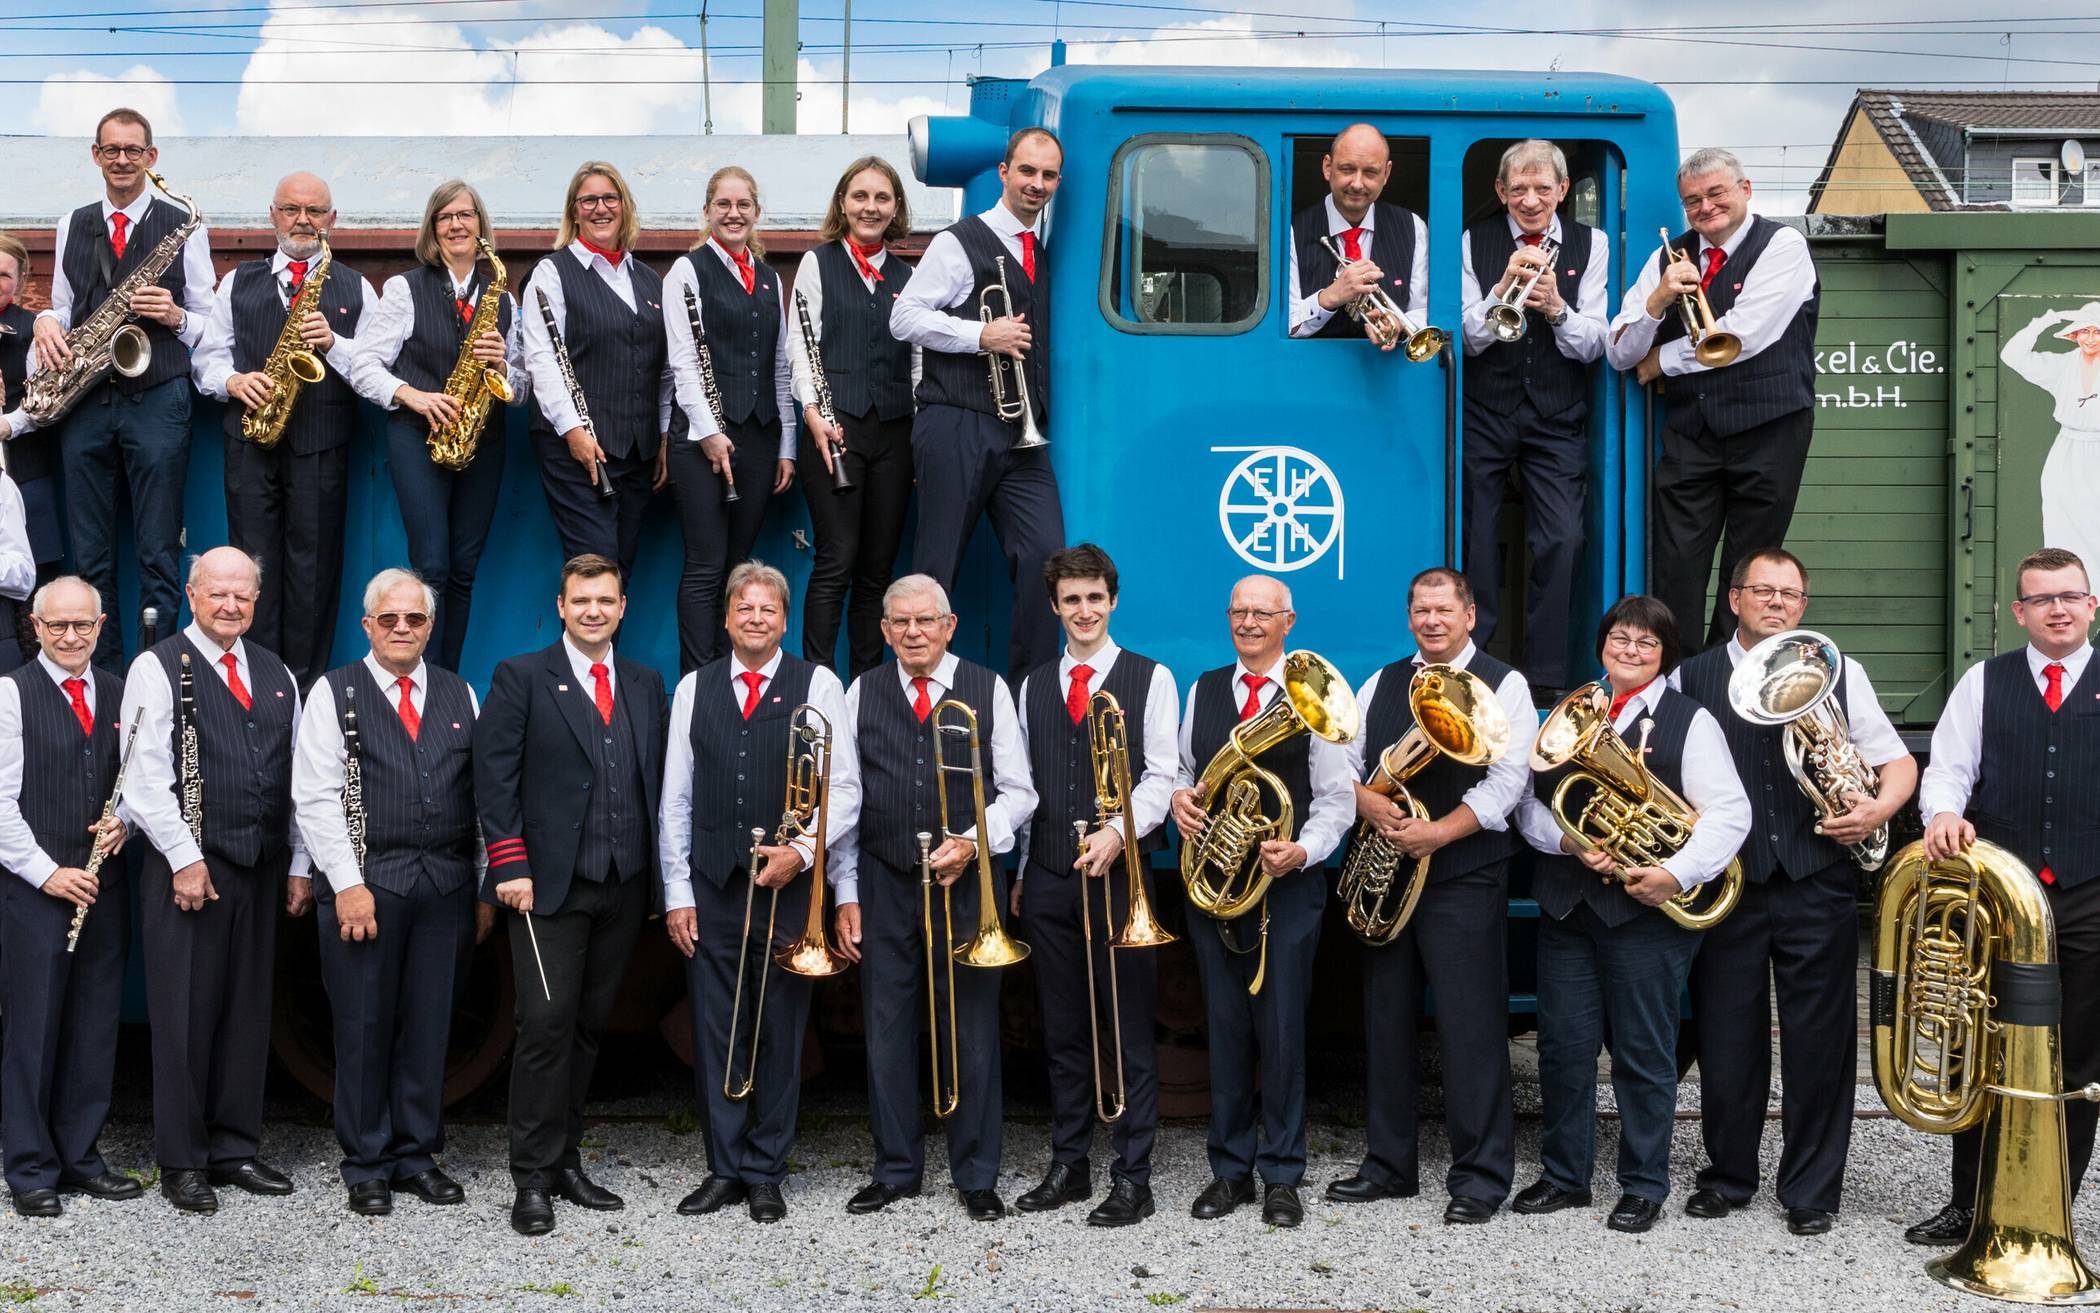 Das Bundesbahn-Orchester Wuppertal ist ein Blasorchester mit 65-jähriger Tradition. Es besteht zurzeit aus gut 35 aktiven Musizierenden jeden Alters.